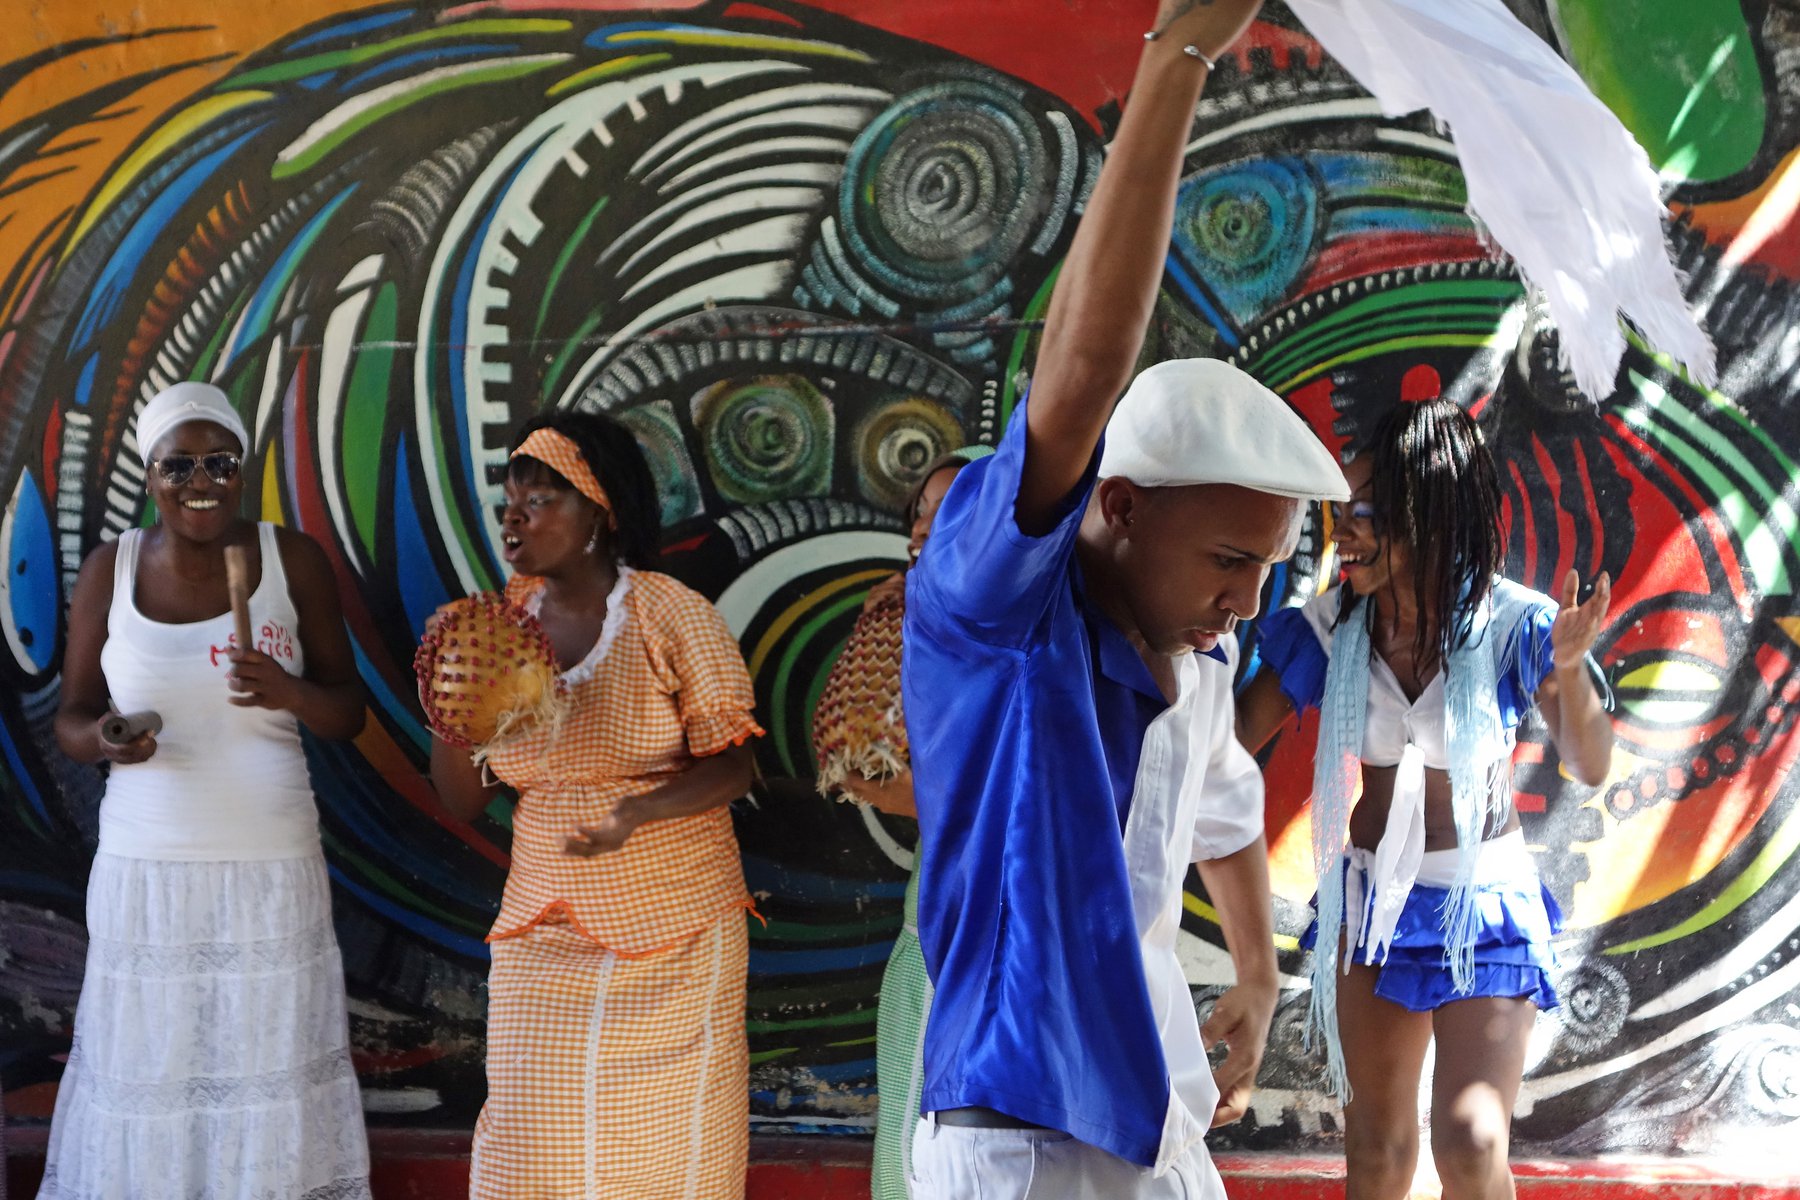 Du besöker kulturprojektet Callejón de Hamel i Havanna